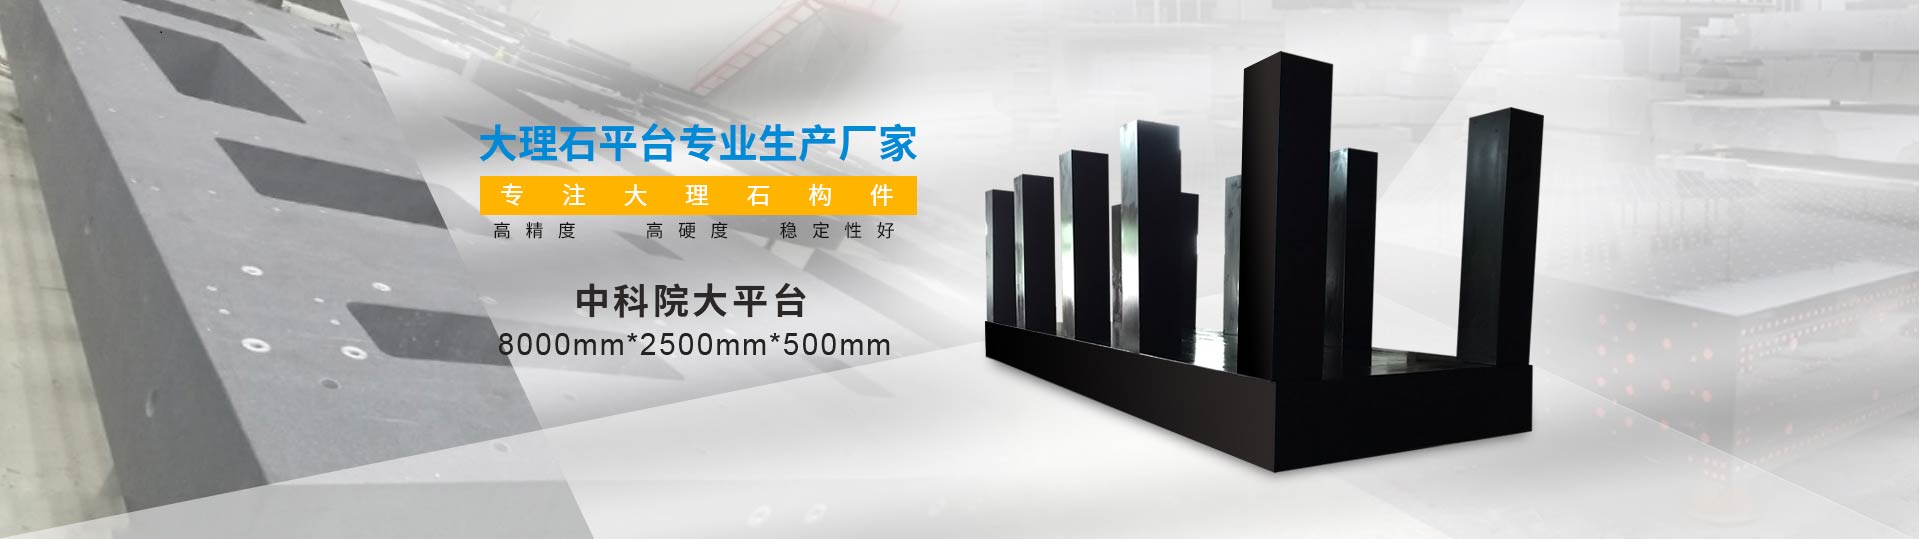 惠州高精度大理石平台厂家直售